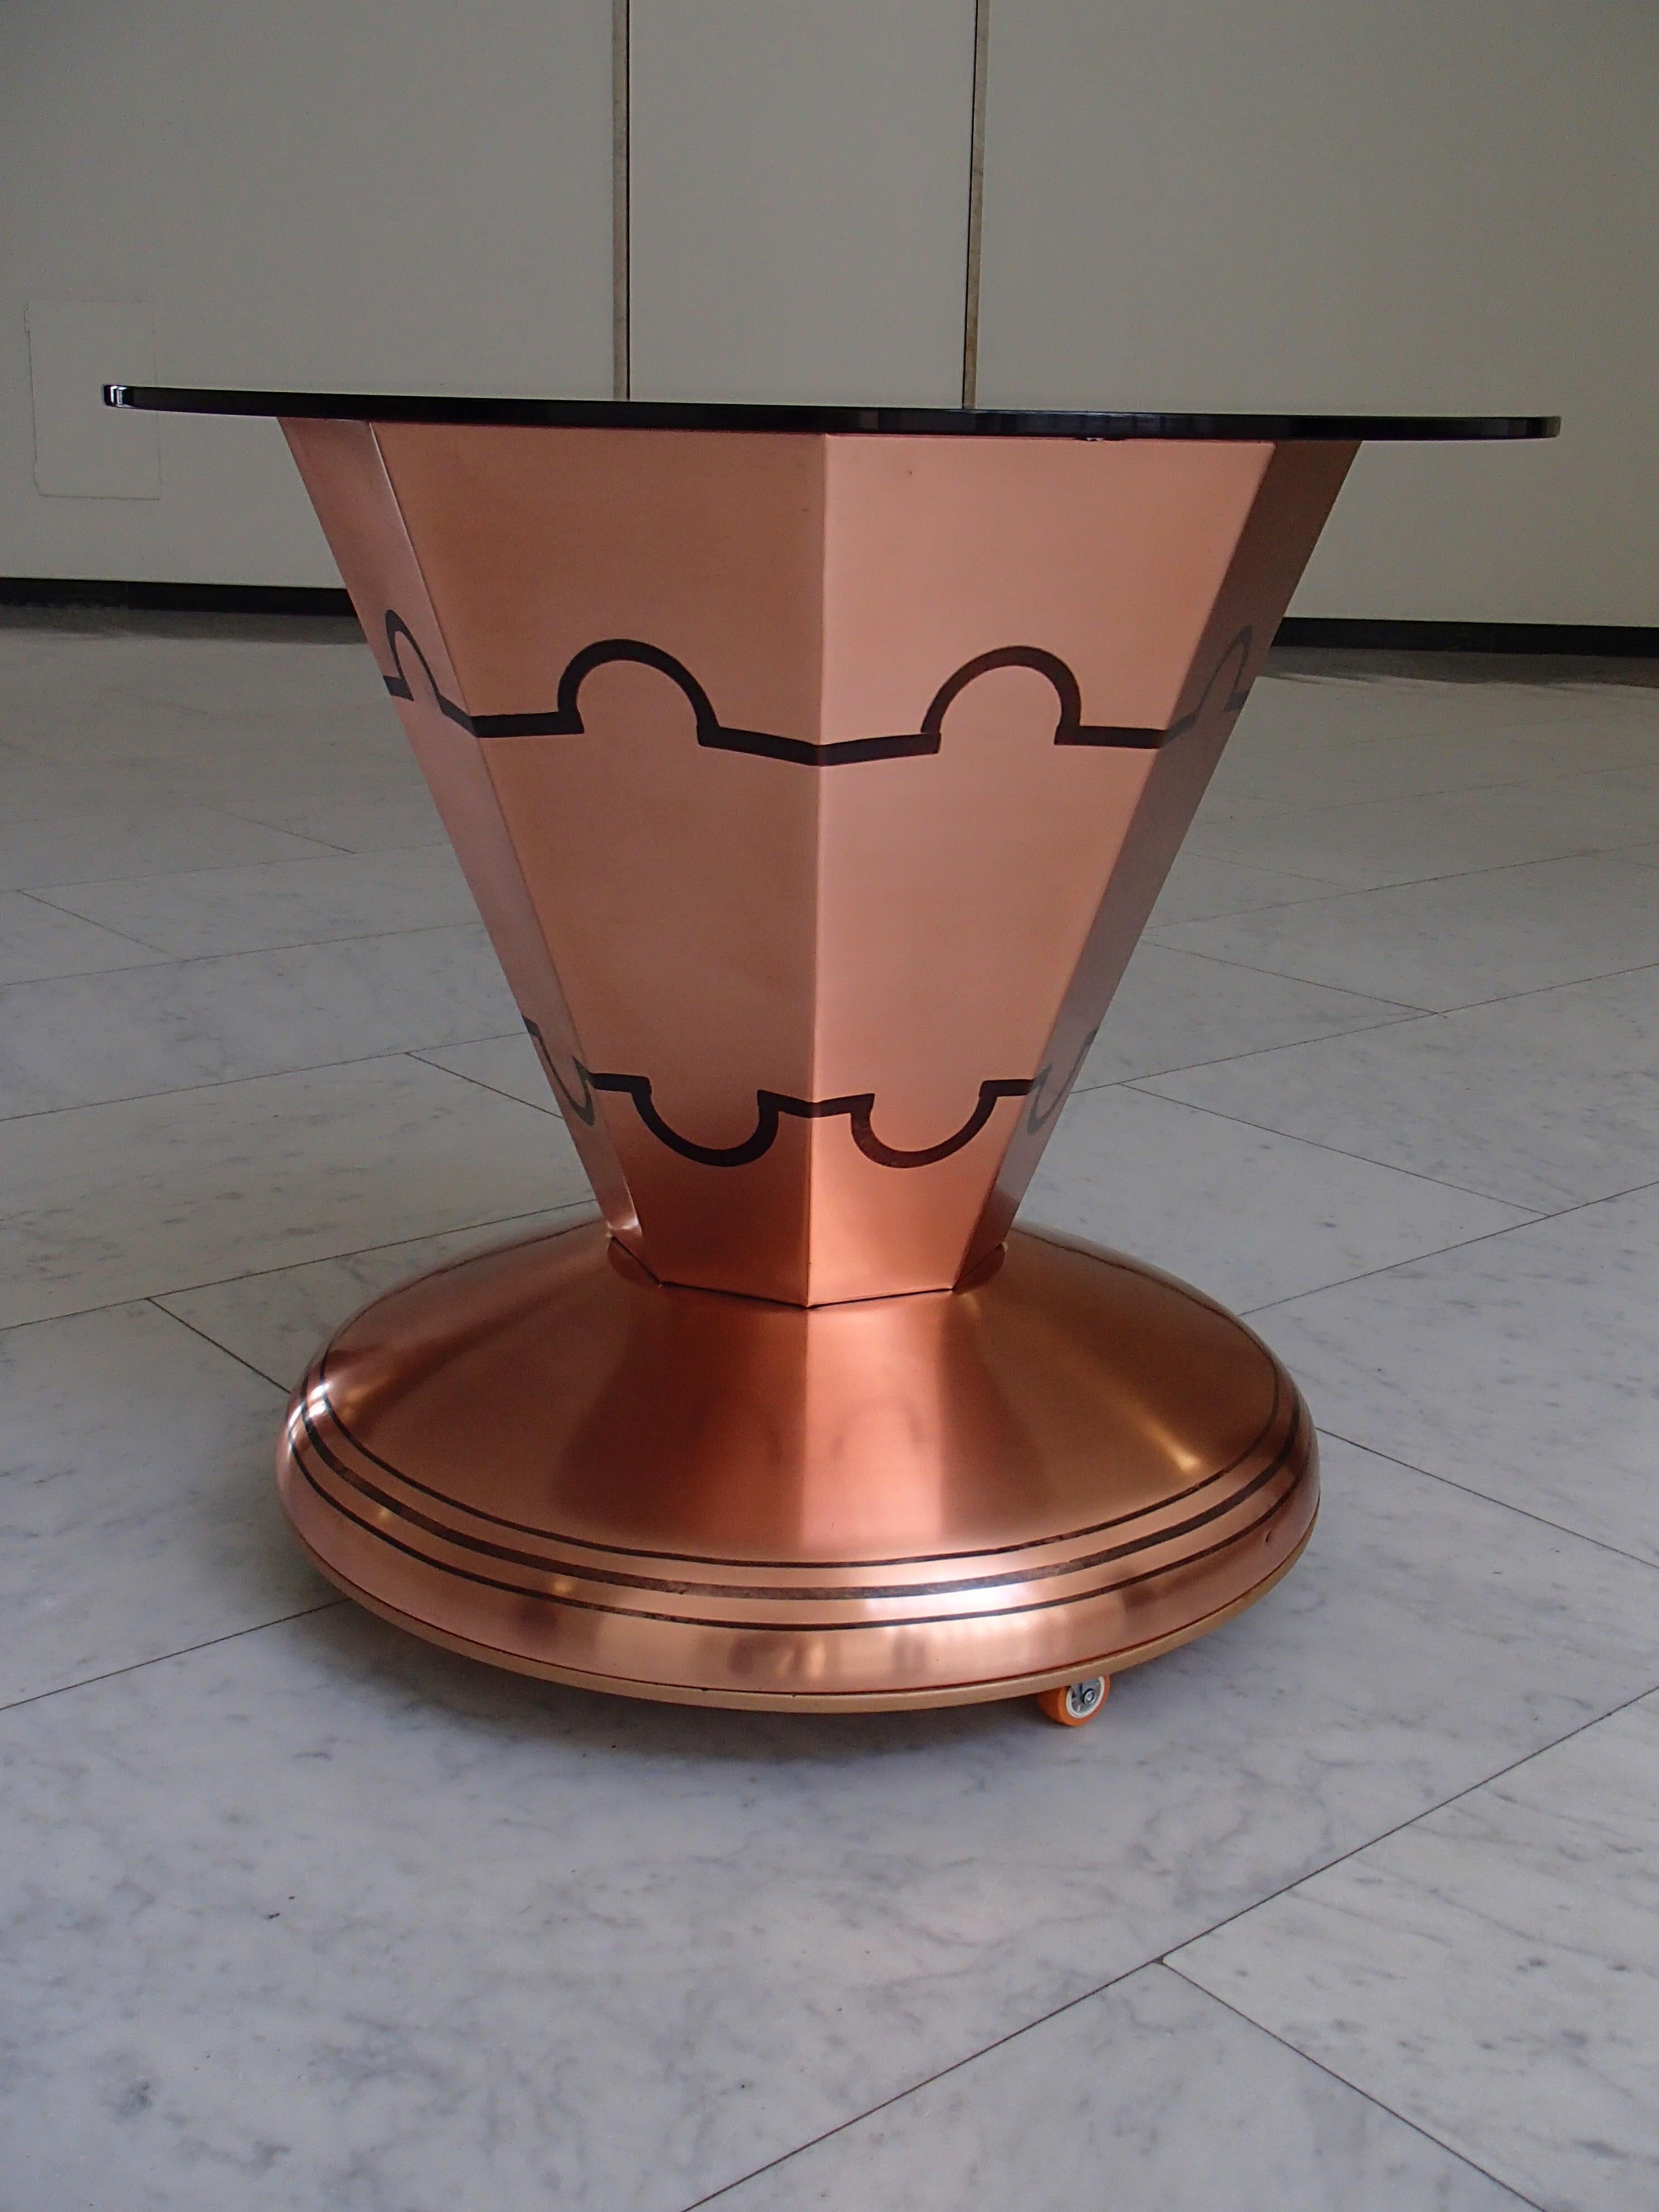 copper bar tray